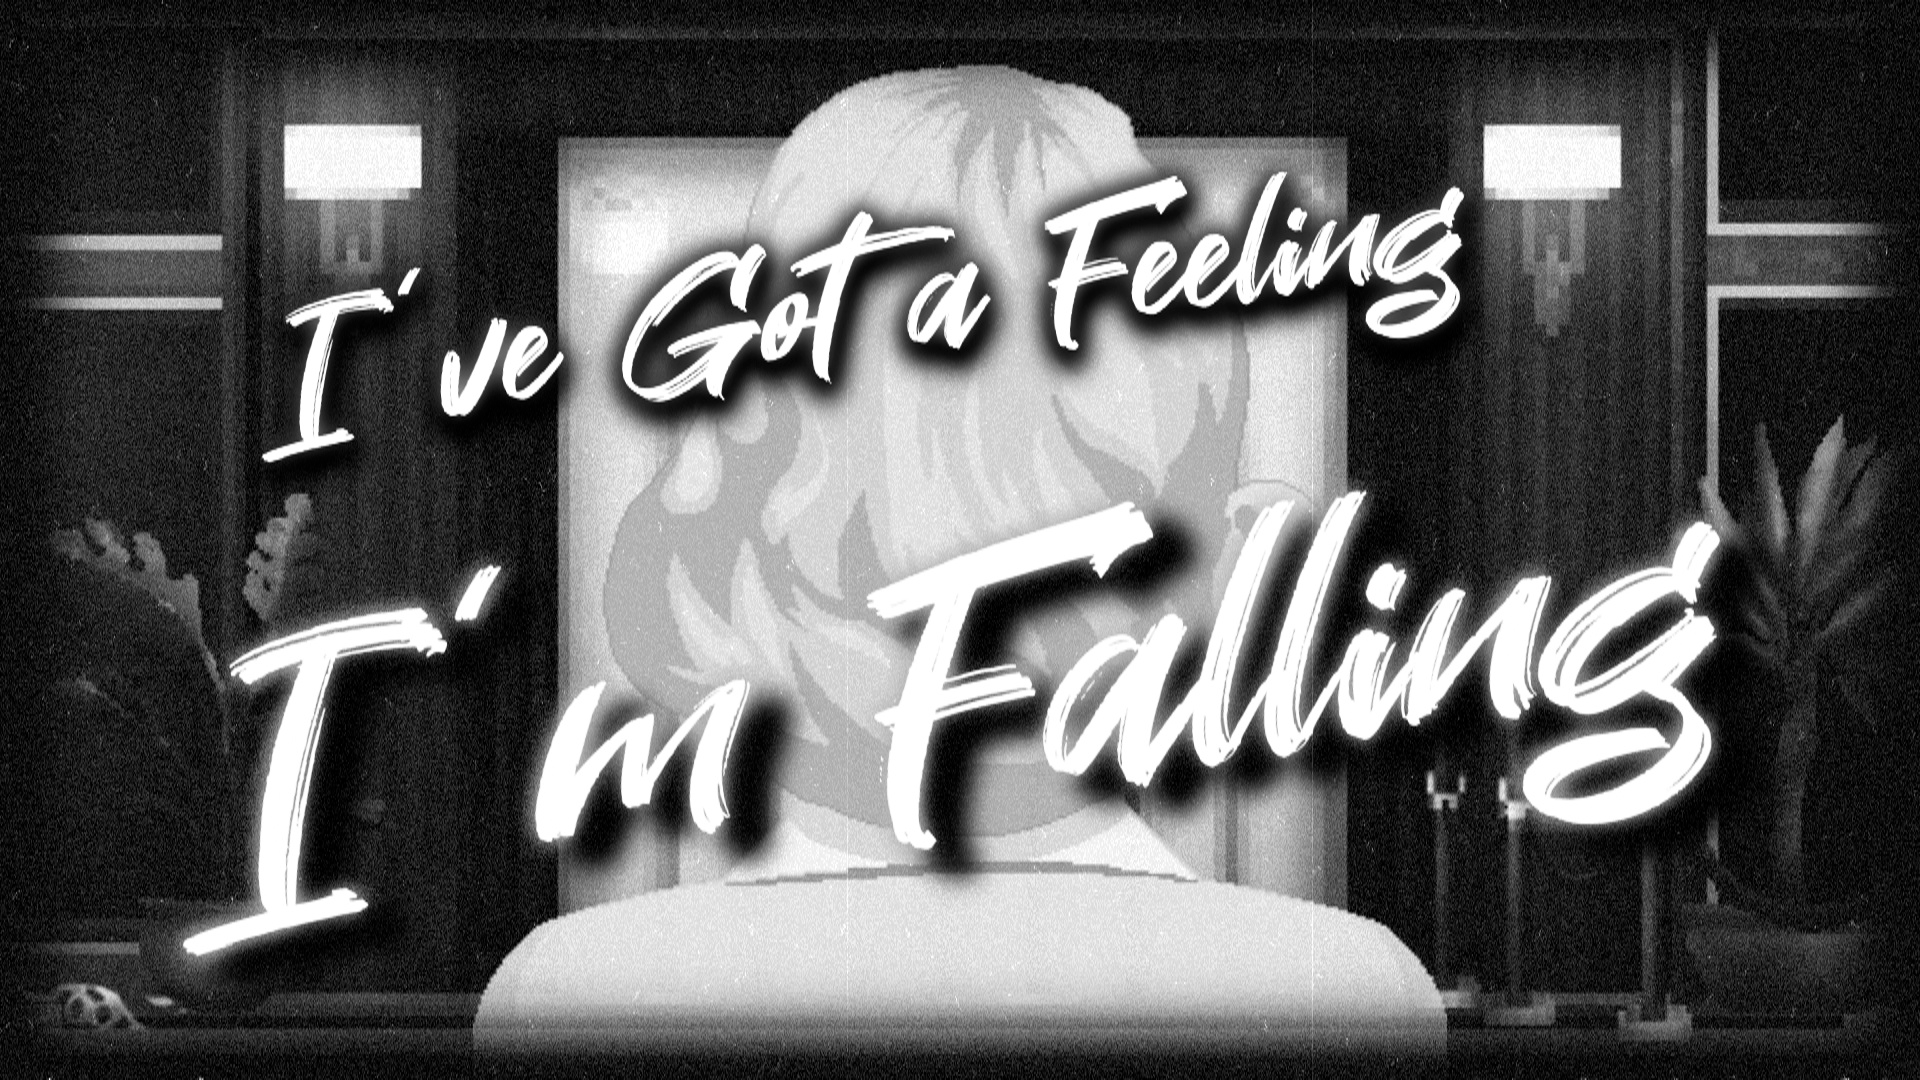 I've Got a Feeling I'm Falling